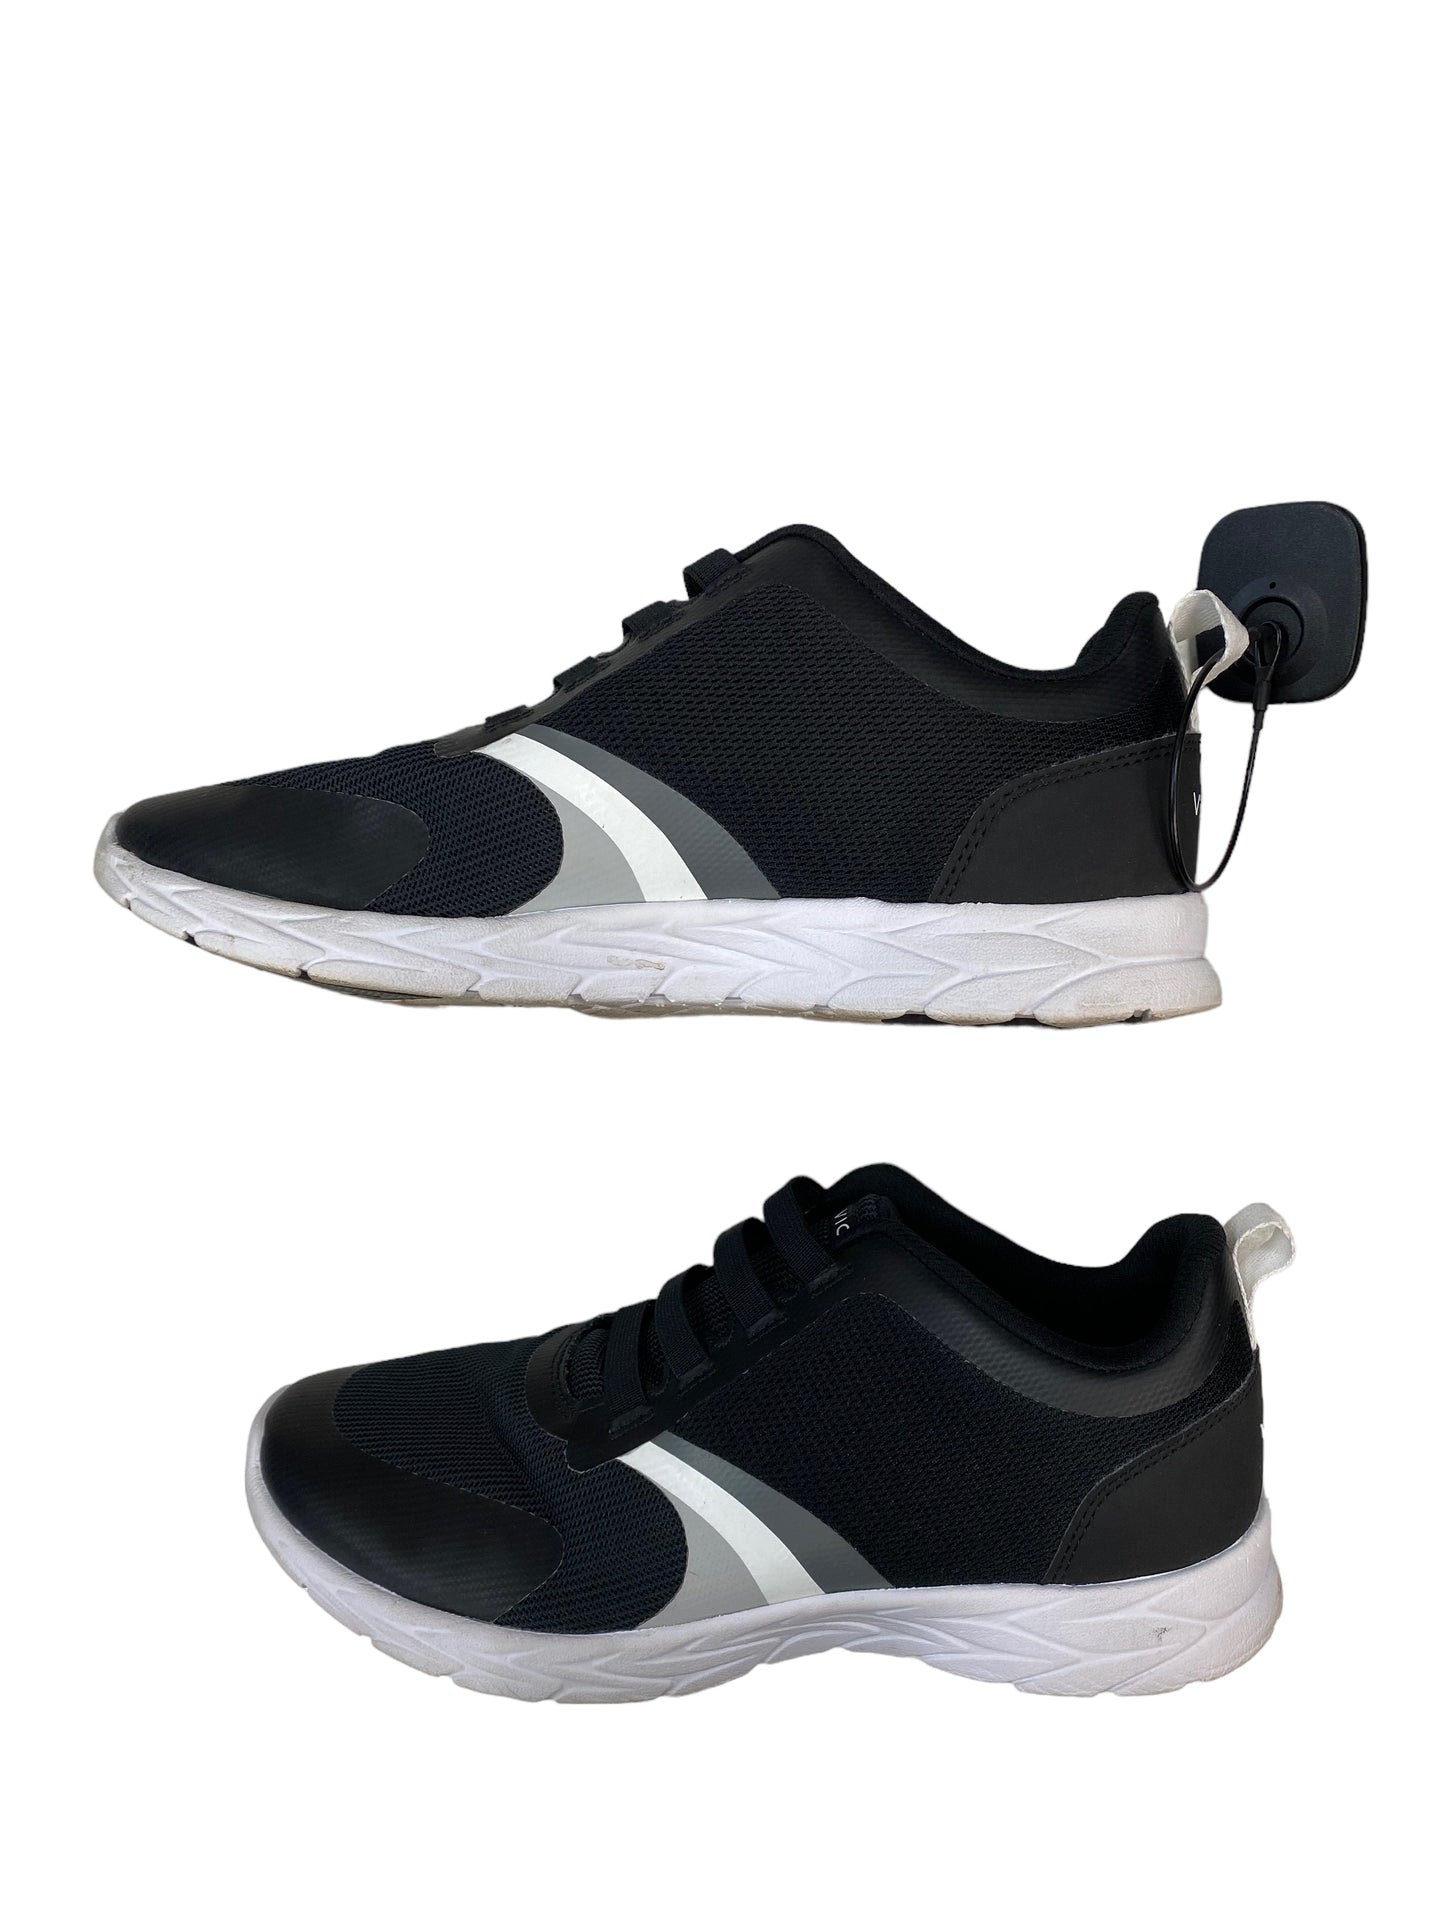 Black Shoes Athletic Vionic, Size 8